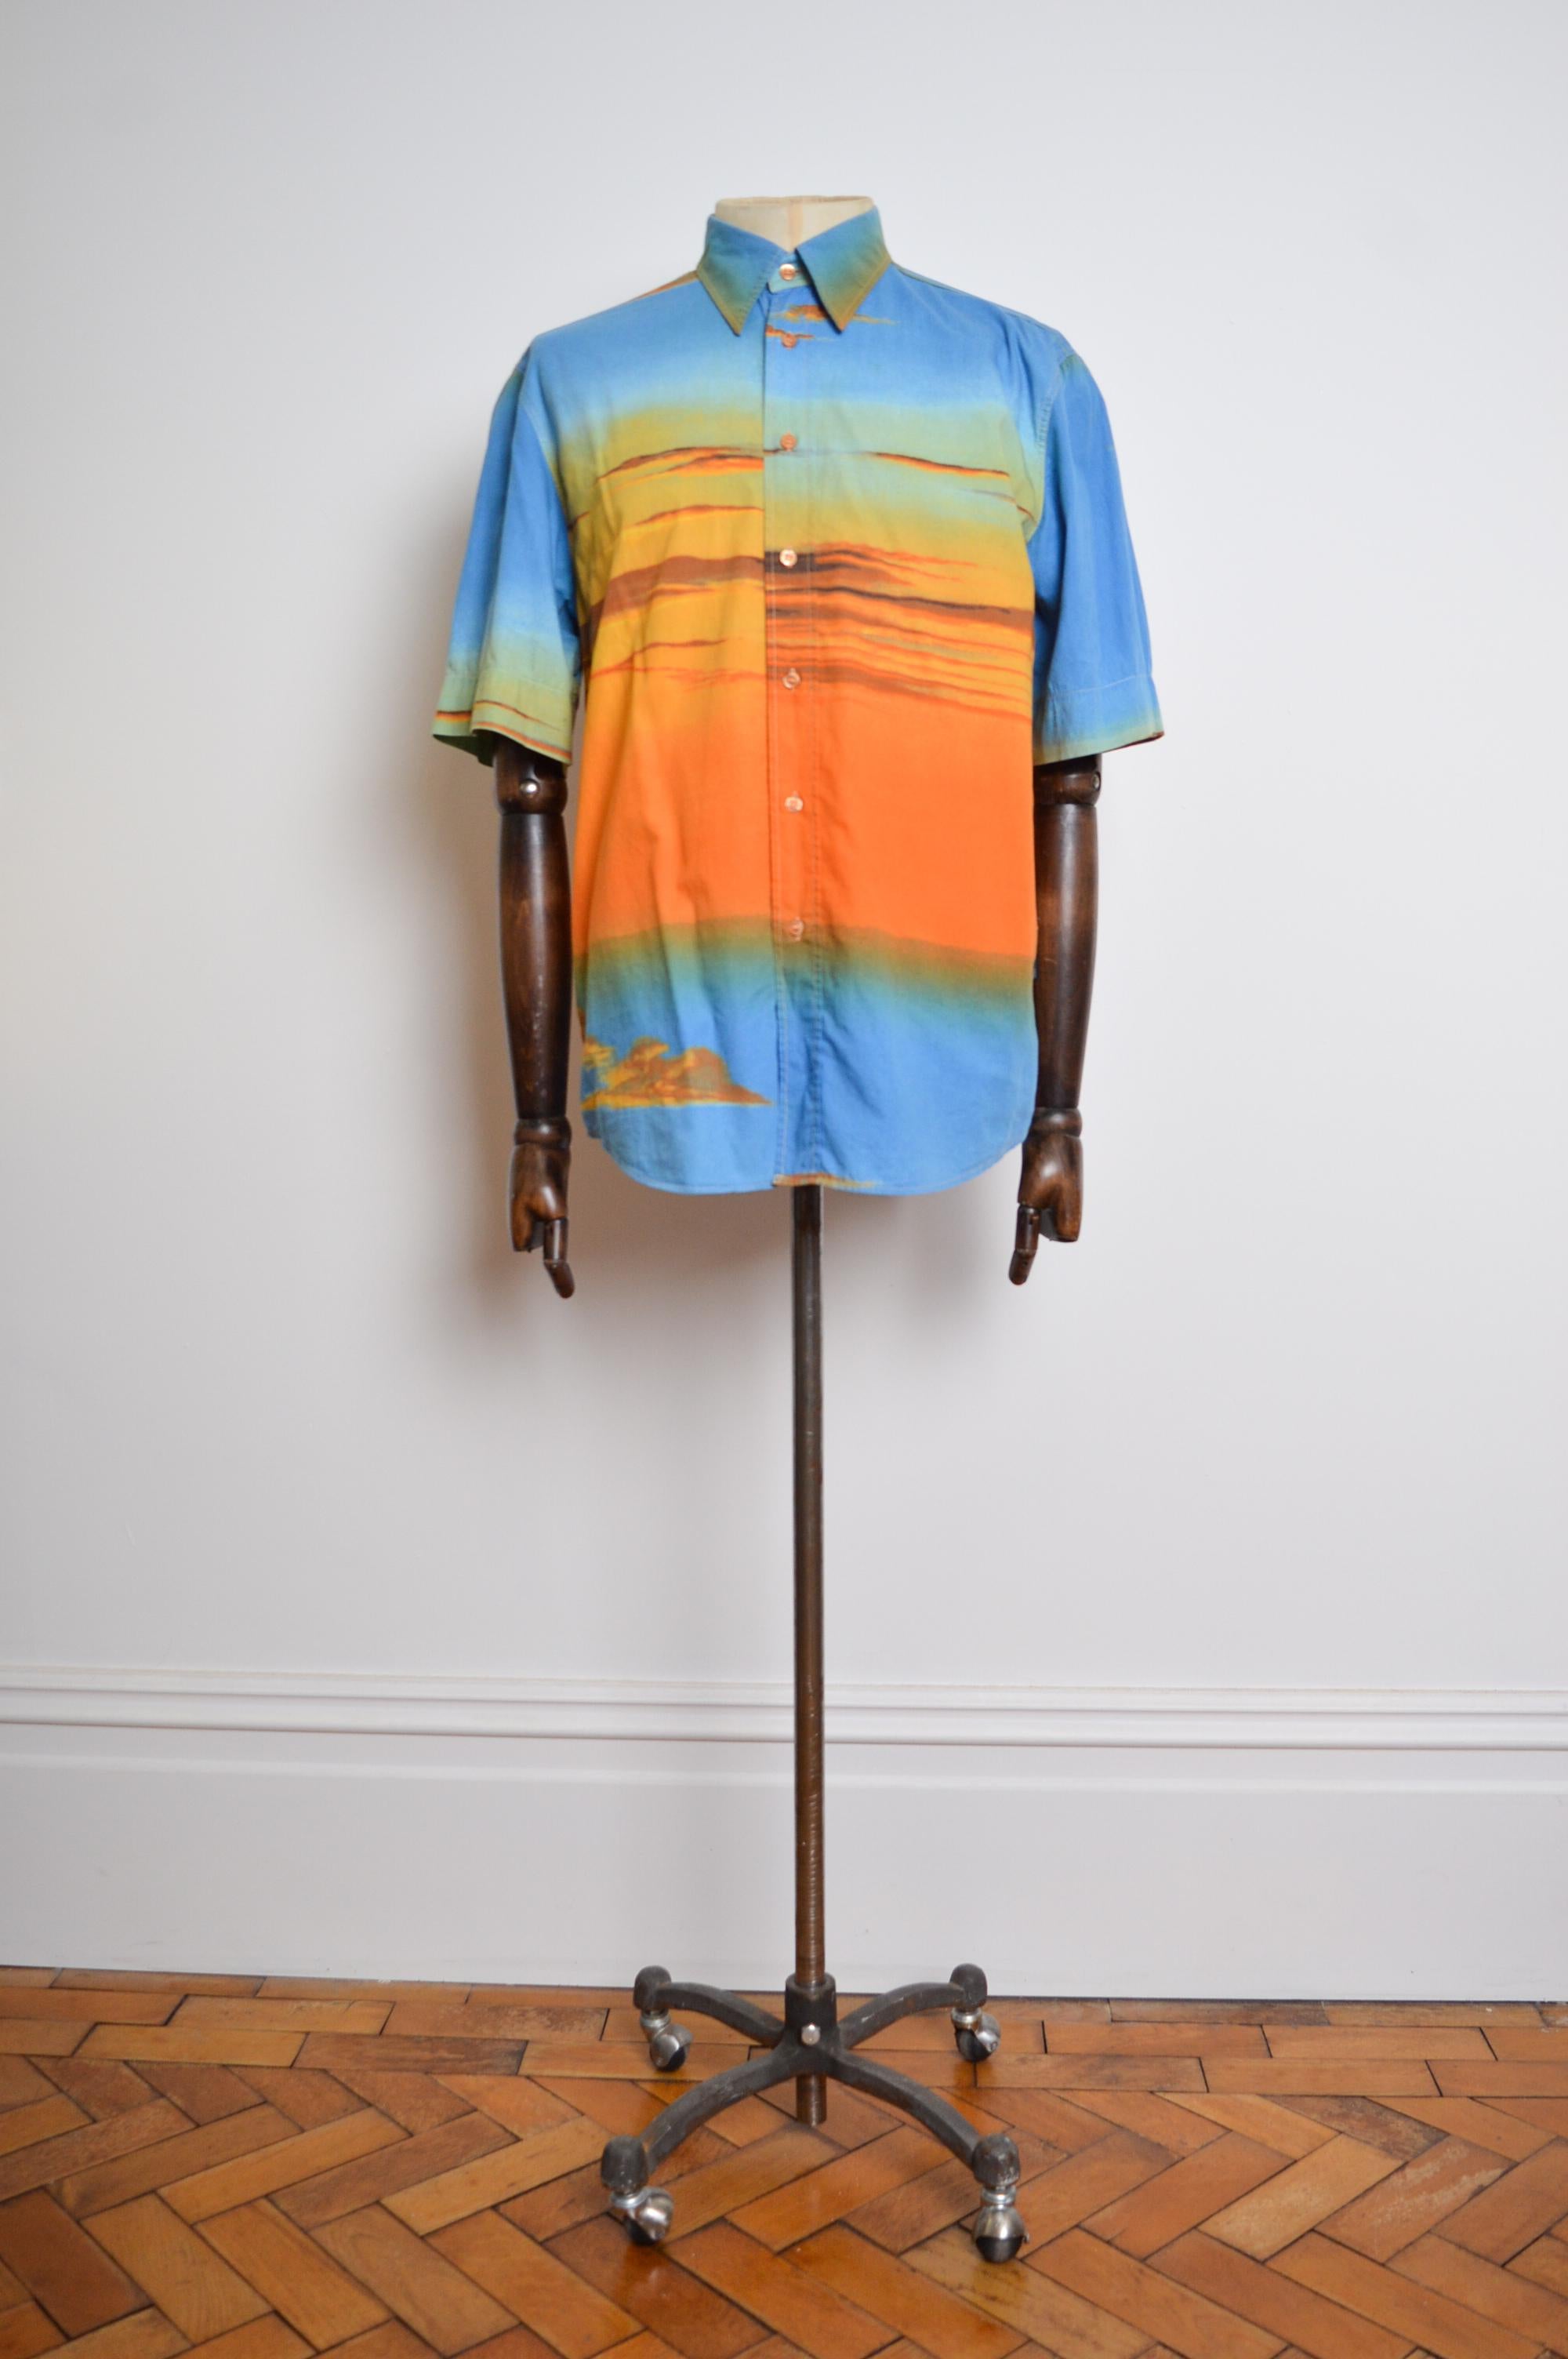 Frühes 2000's UK Garage Era 'MOSCHINO' Sun-set print Baumwollhemd, gefertigt aus einem bedruckten Stoff in Blau und Orange ombré Schattierungen. 

Wir haben auch die passende Jacke und Hose separat zu kaufen. 

GEFERTIGT IN ITALIEN.   

Merkmale: